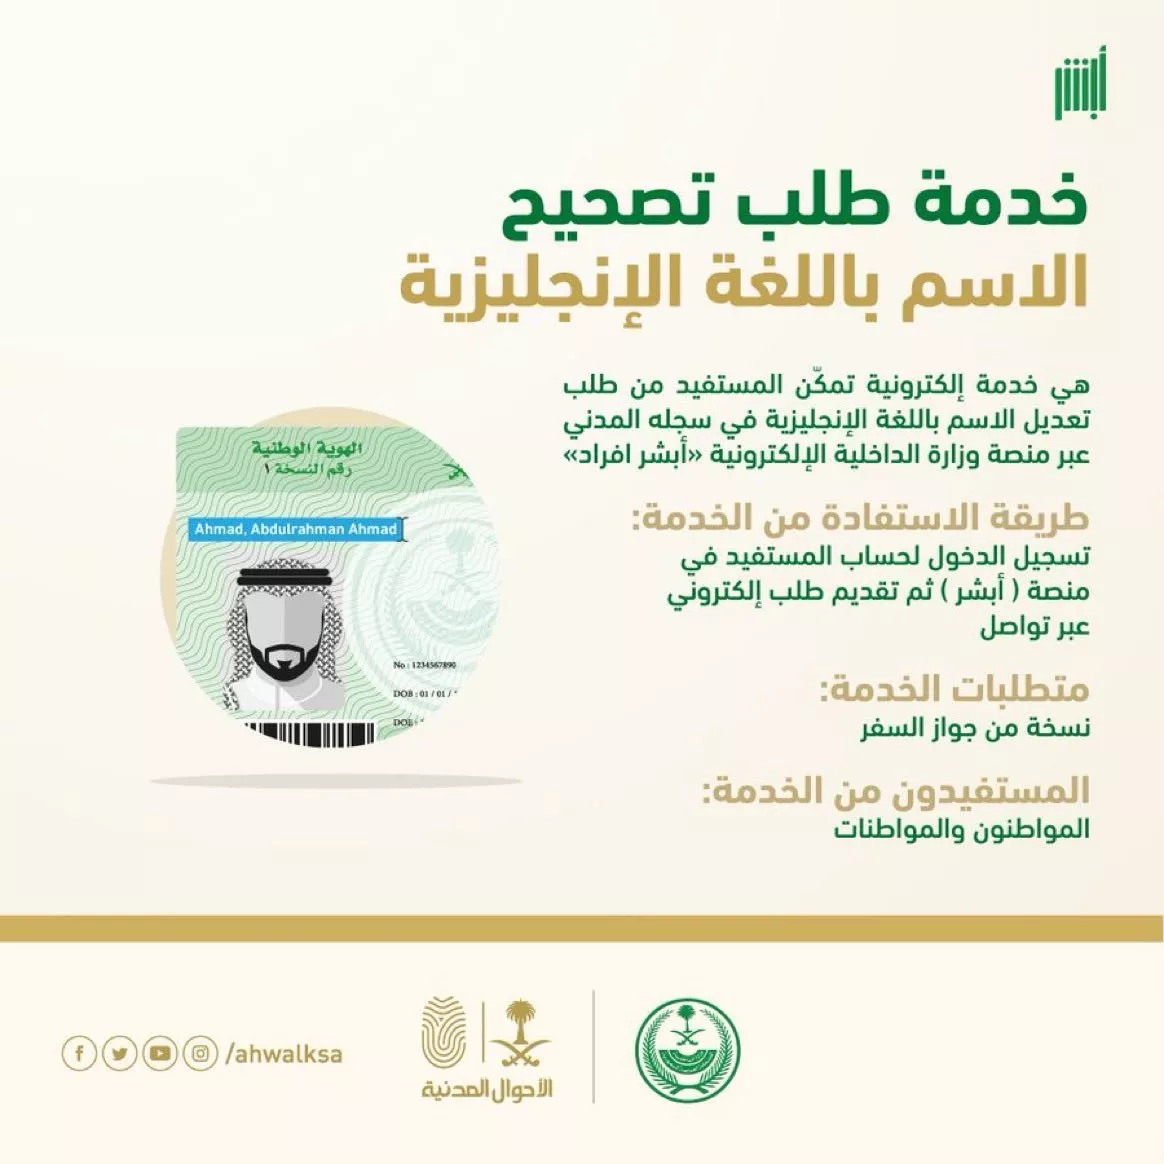 بطاقة احوال السعودية: الشروط وكل الاجراءات اللازمة للحصول عليها أو تجديدها